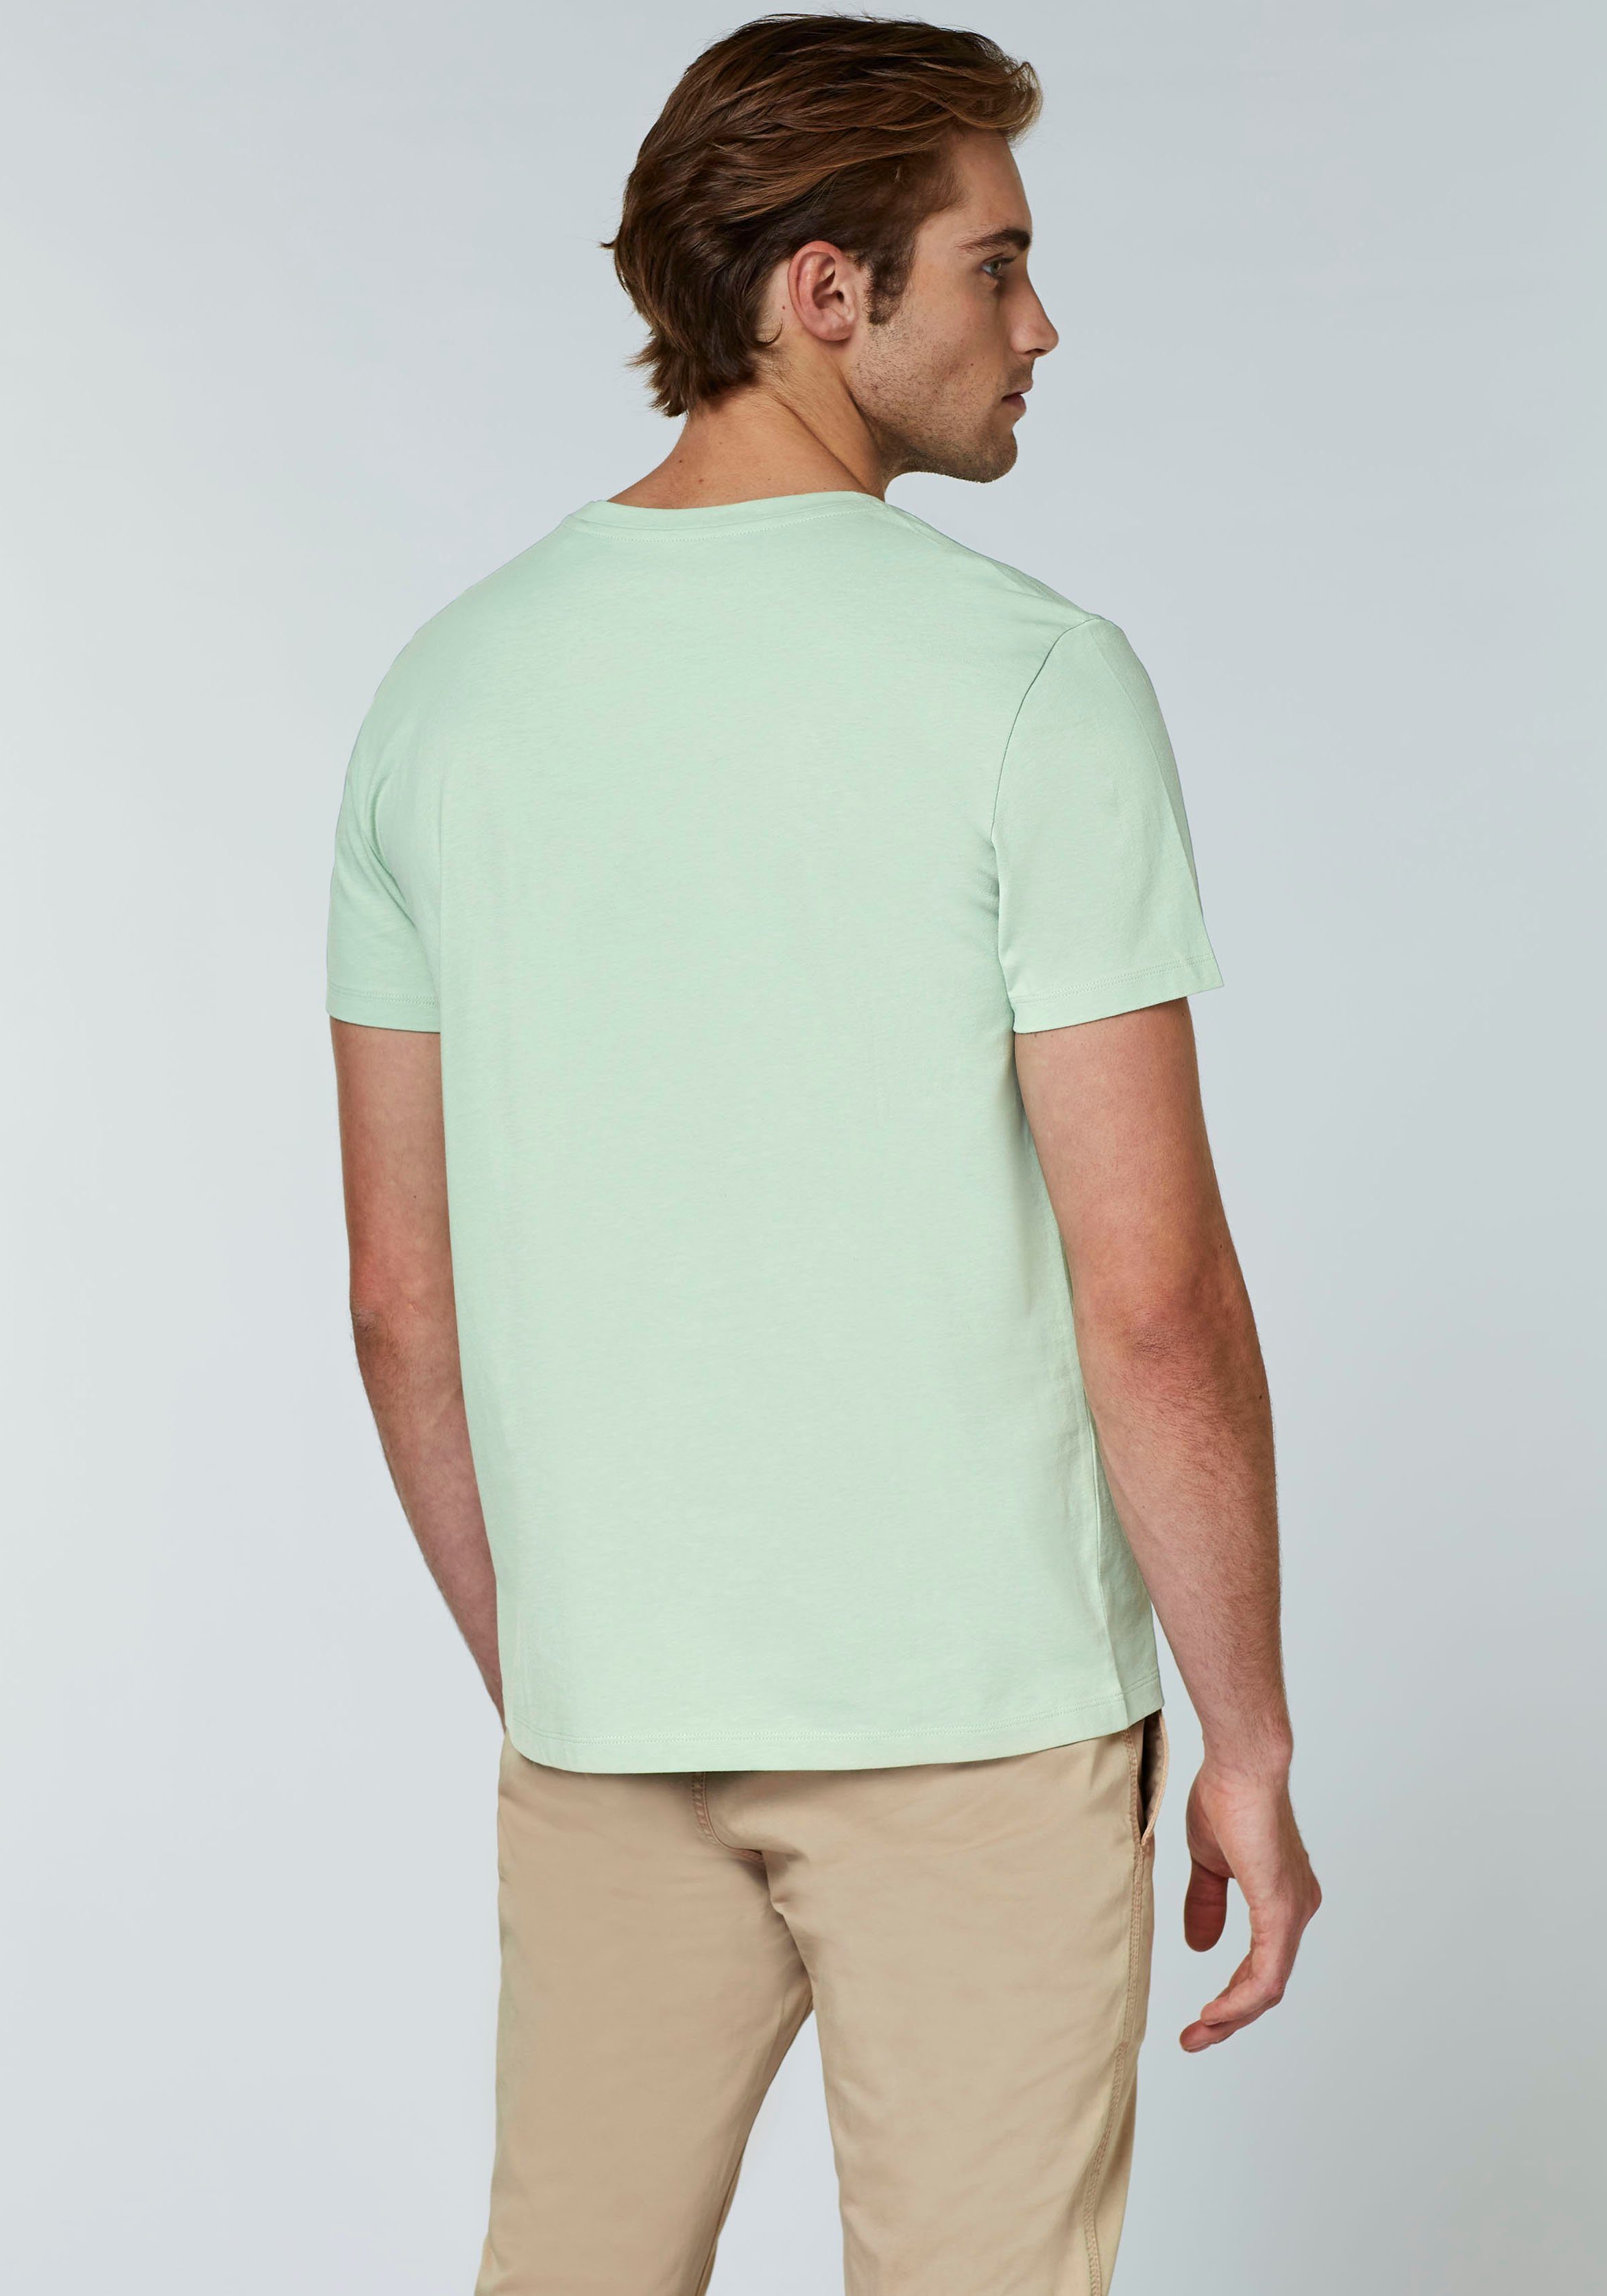 Chiemsee Markenlogo T-Shirt,